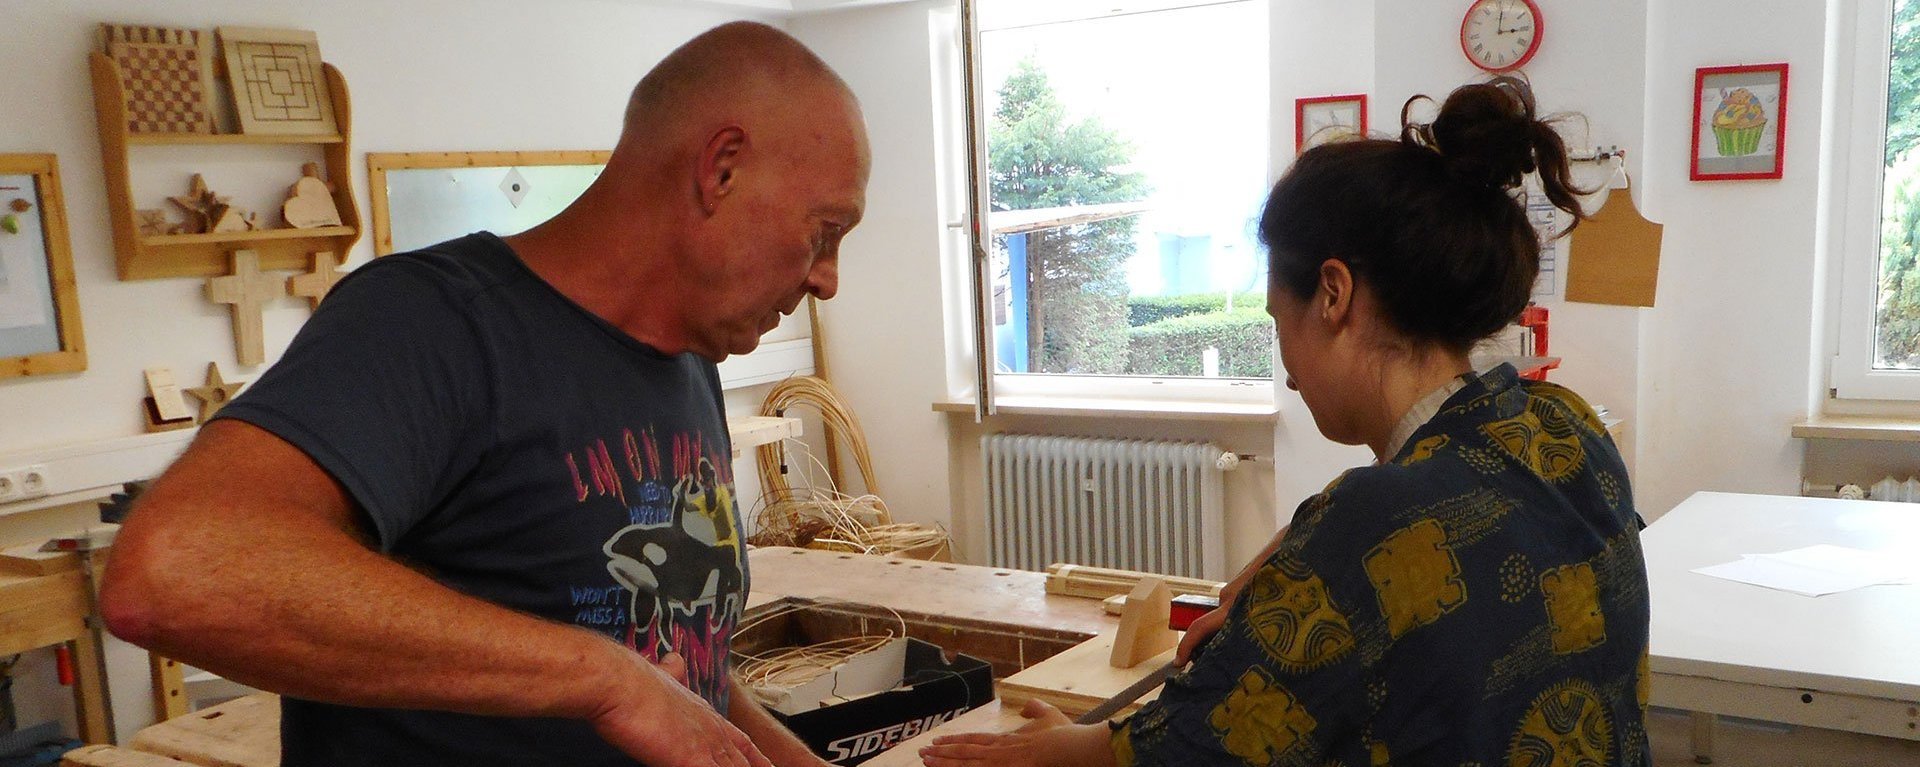 Werkstatt: ein Mann hilft einer Frau beim Holz-Raspeln an einer Werkbank